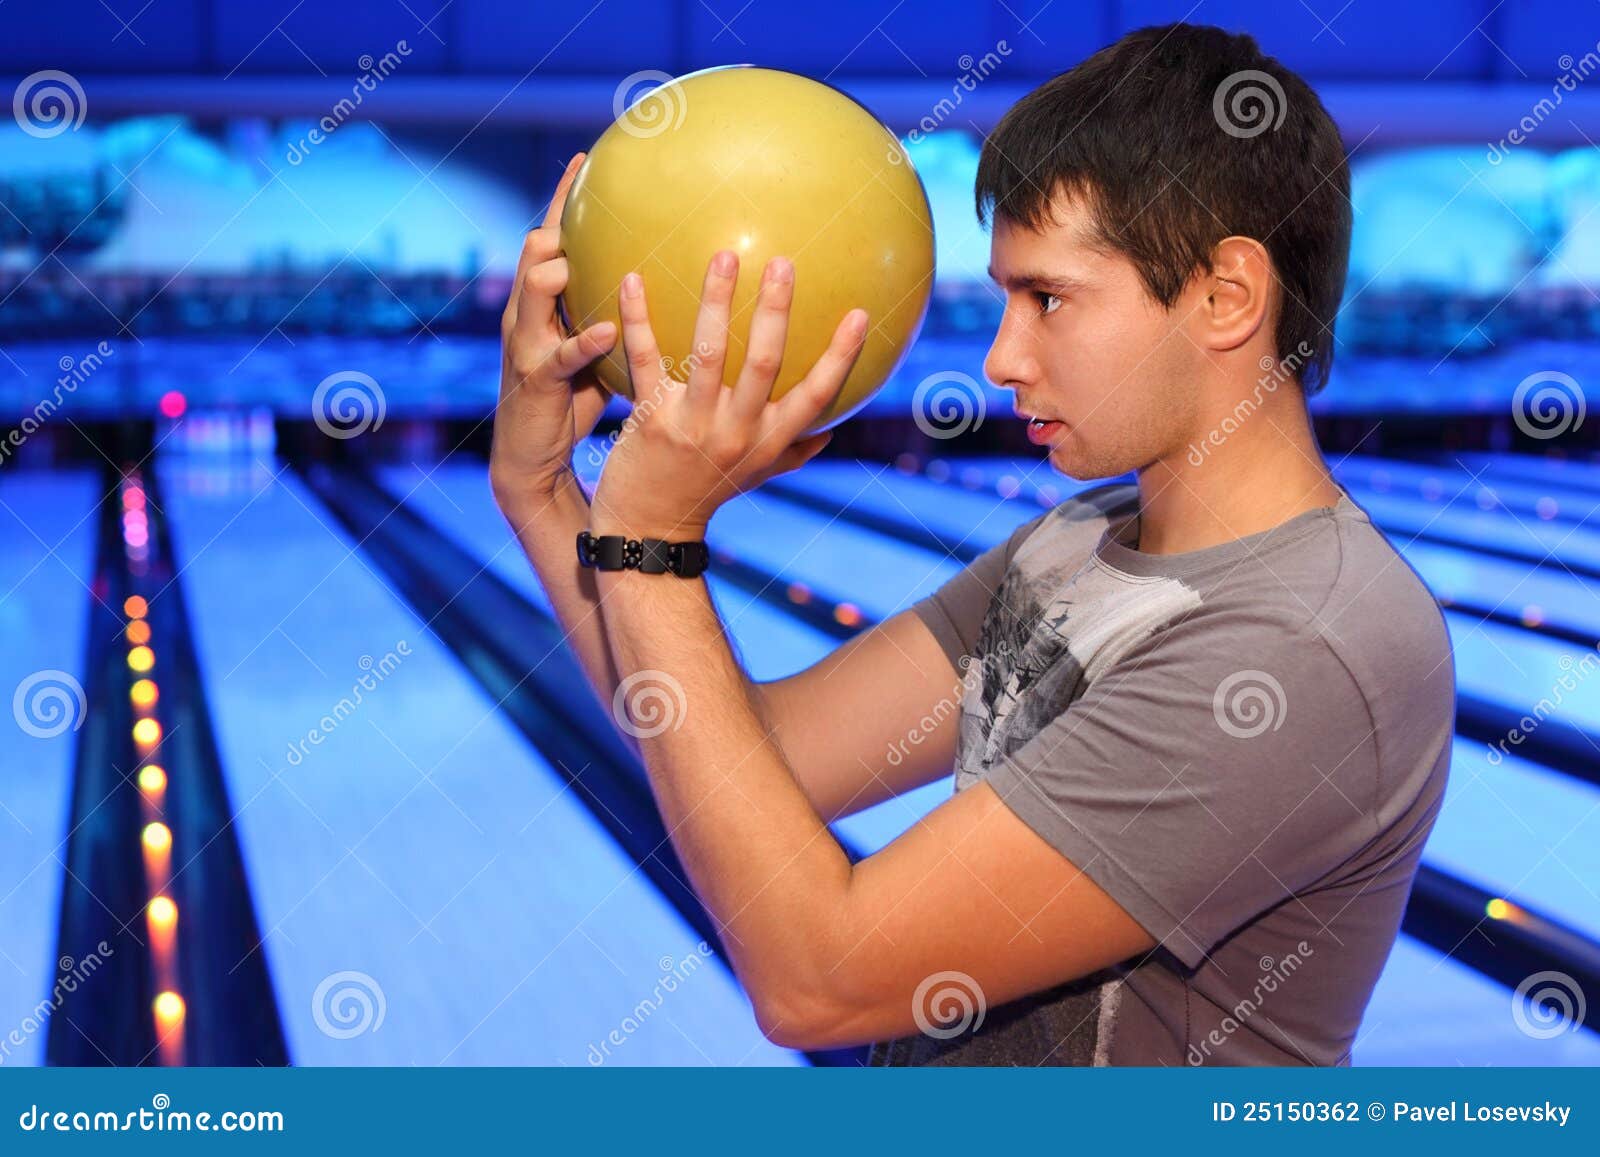 Кинуть шарик. Шар для боулинга. Человек с шаром для боулинга. Мужчина с шаром для боулинга. Фотосессия боулинг мужская.